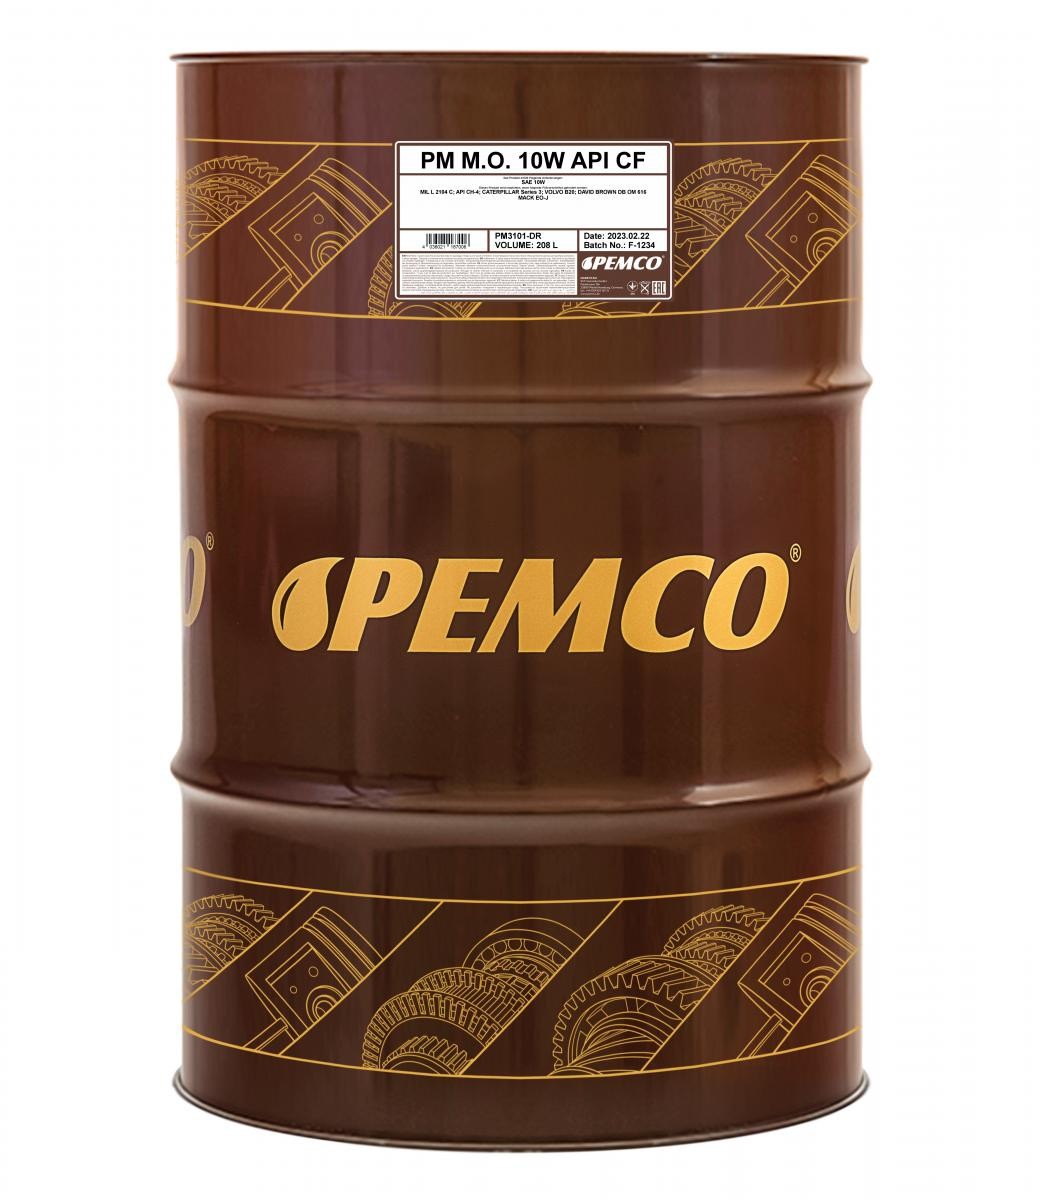 Car oil MIL-L-2104 C PEMCO - PM3101-DR M.O. SAE 10W